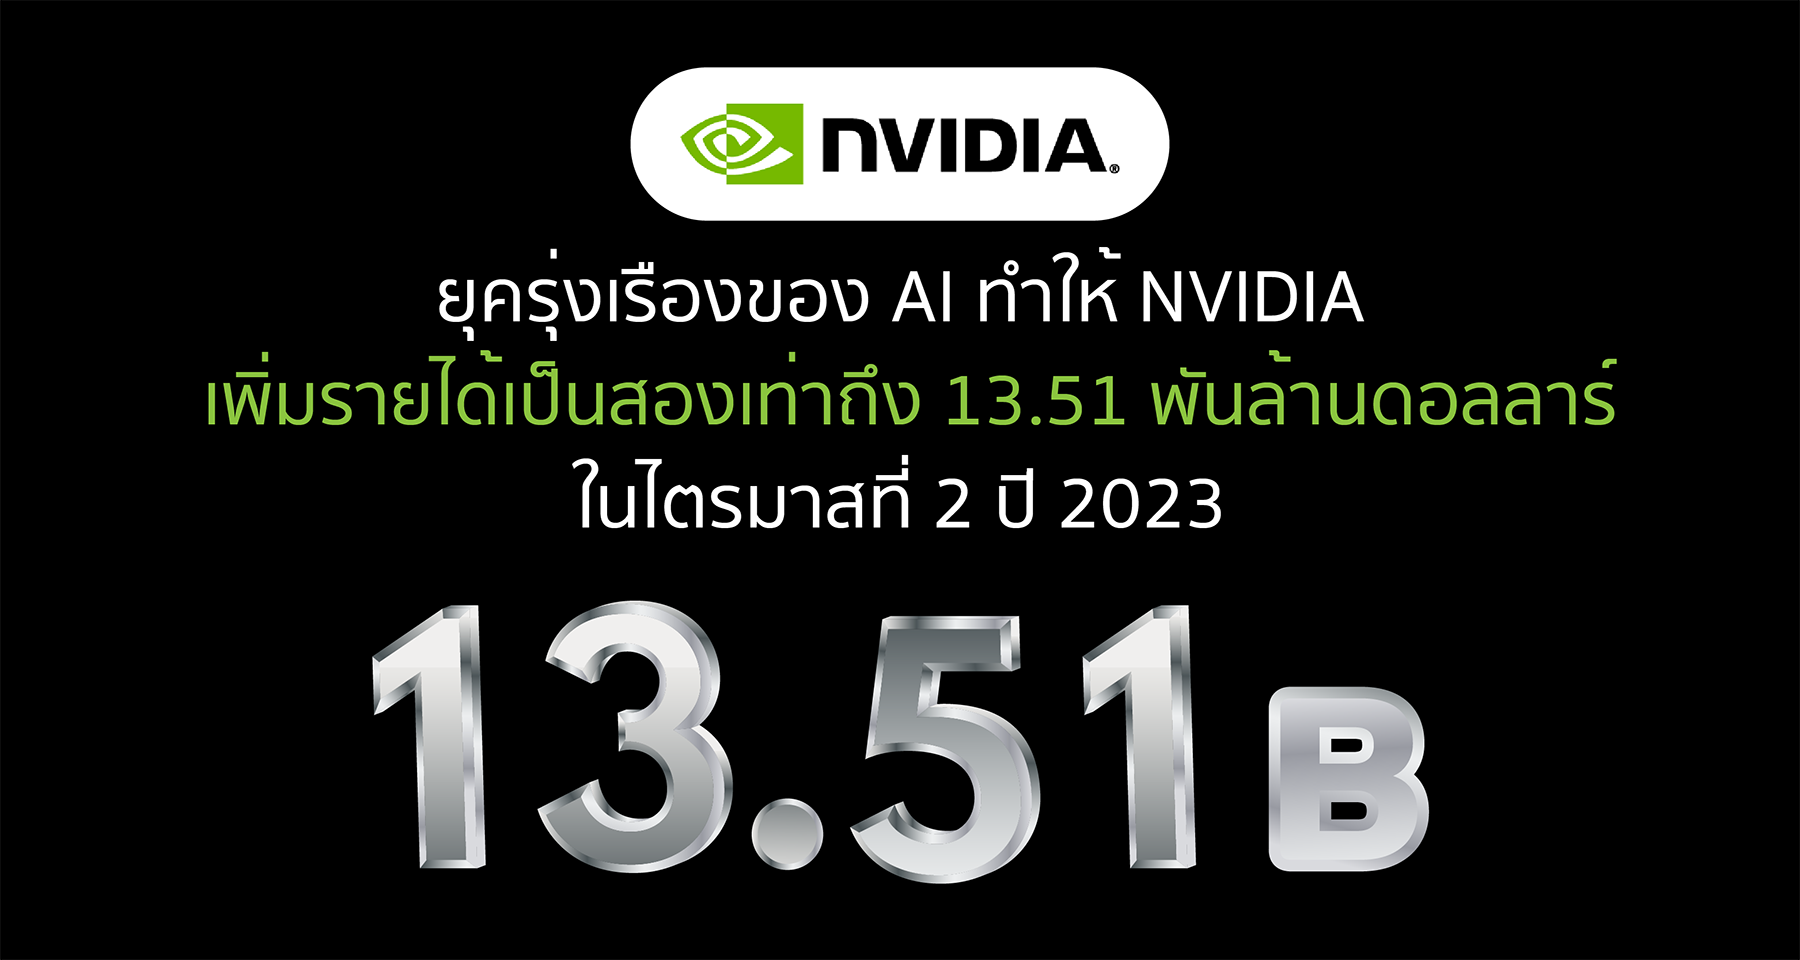 ยุครุ่งเรืองของ AI ทำให้ NVIDIA เพิ่มรายได้เป็นสองเท่าถึง 13.51 พันล้านดอลลาร์ในไตรมาสที่ 2 ปี 2023